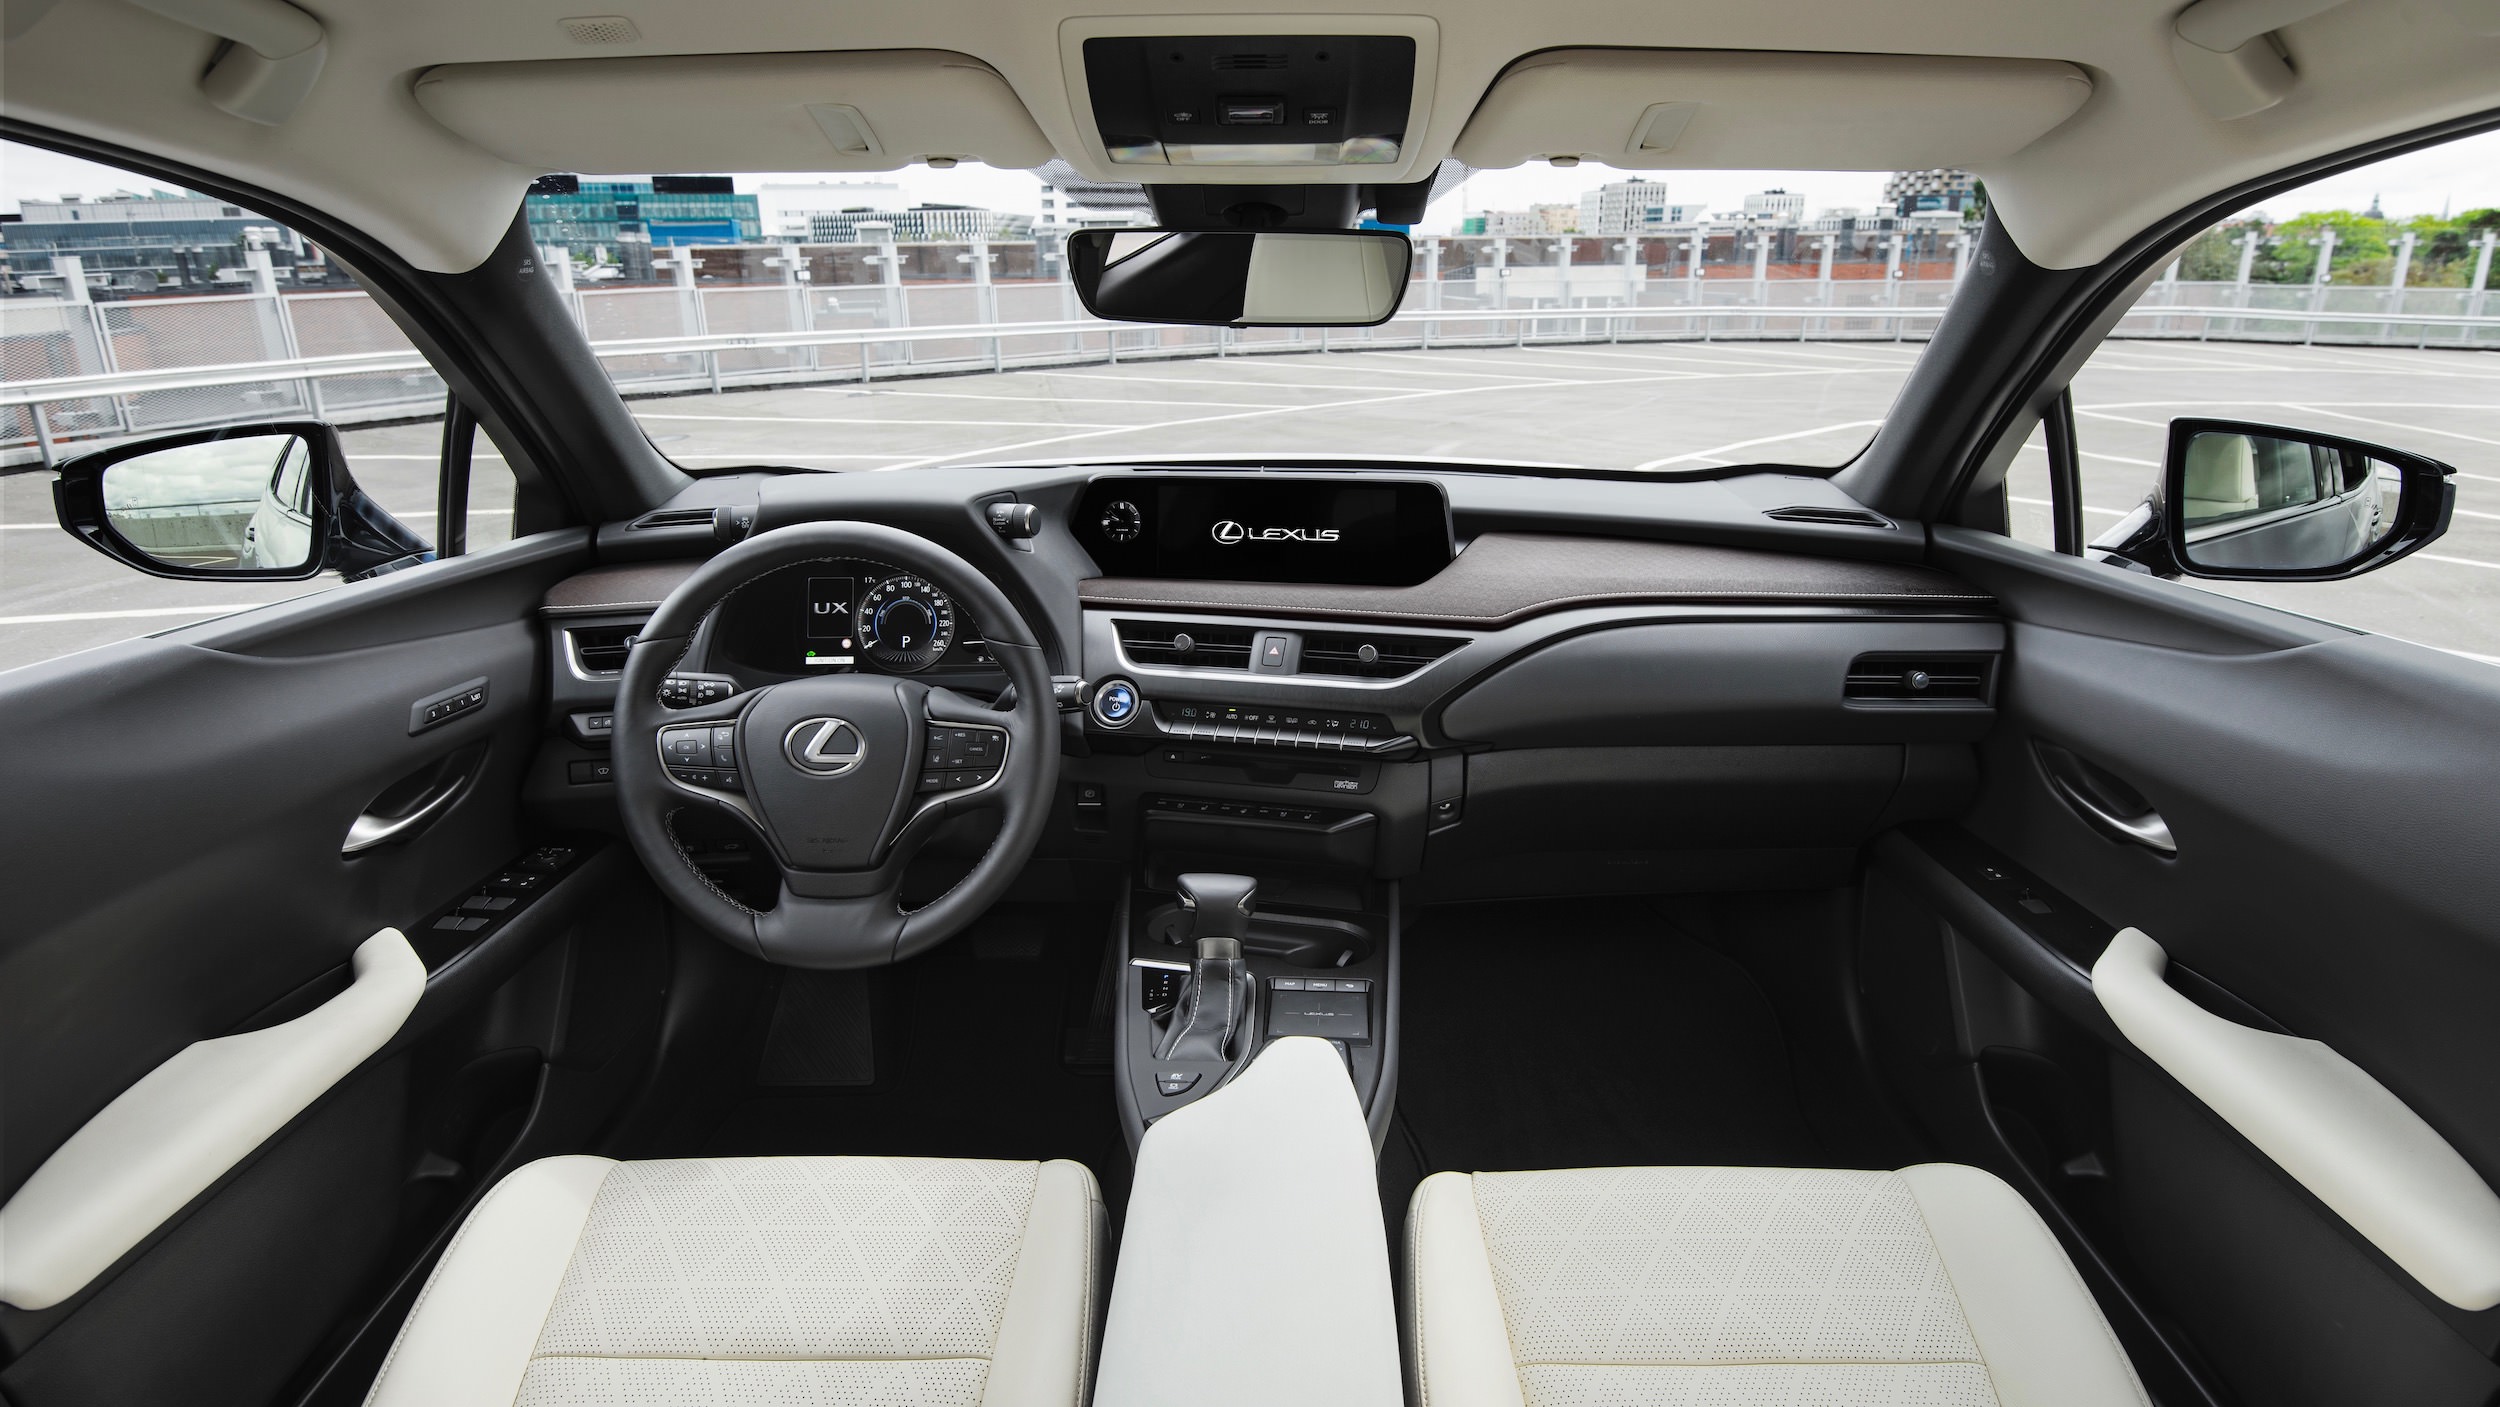 Lexus UX 250h interior